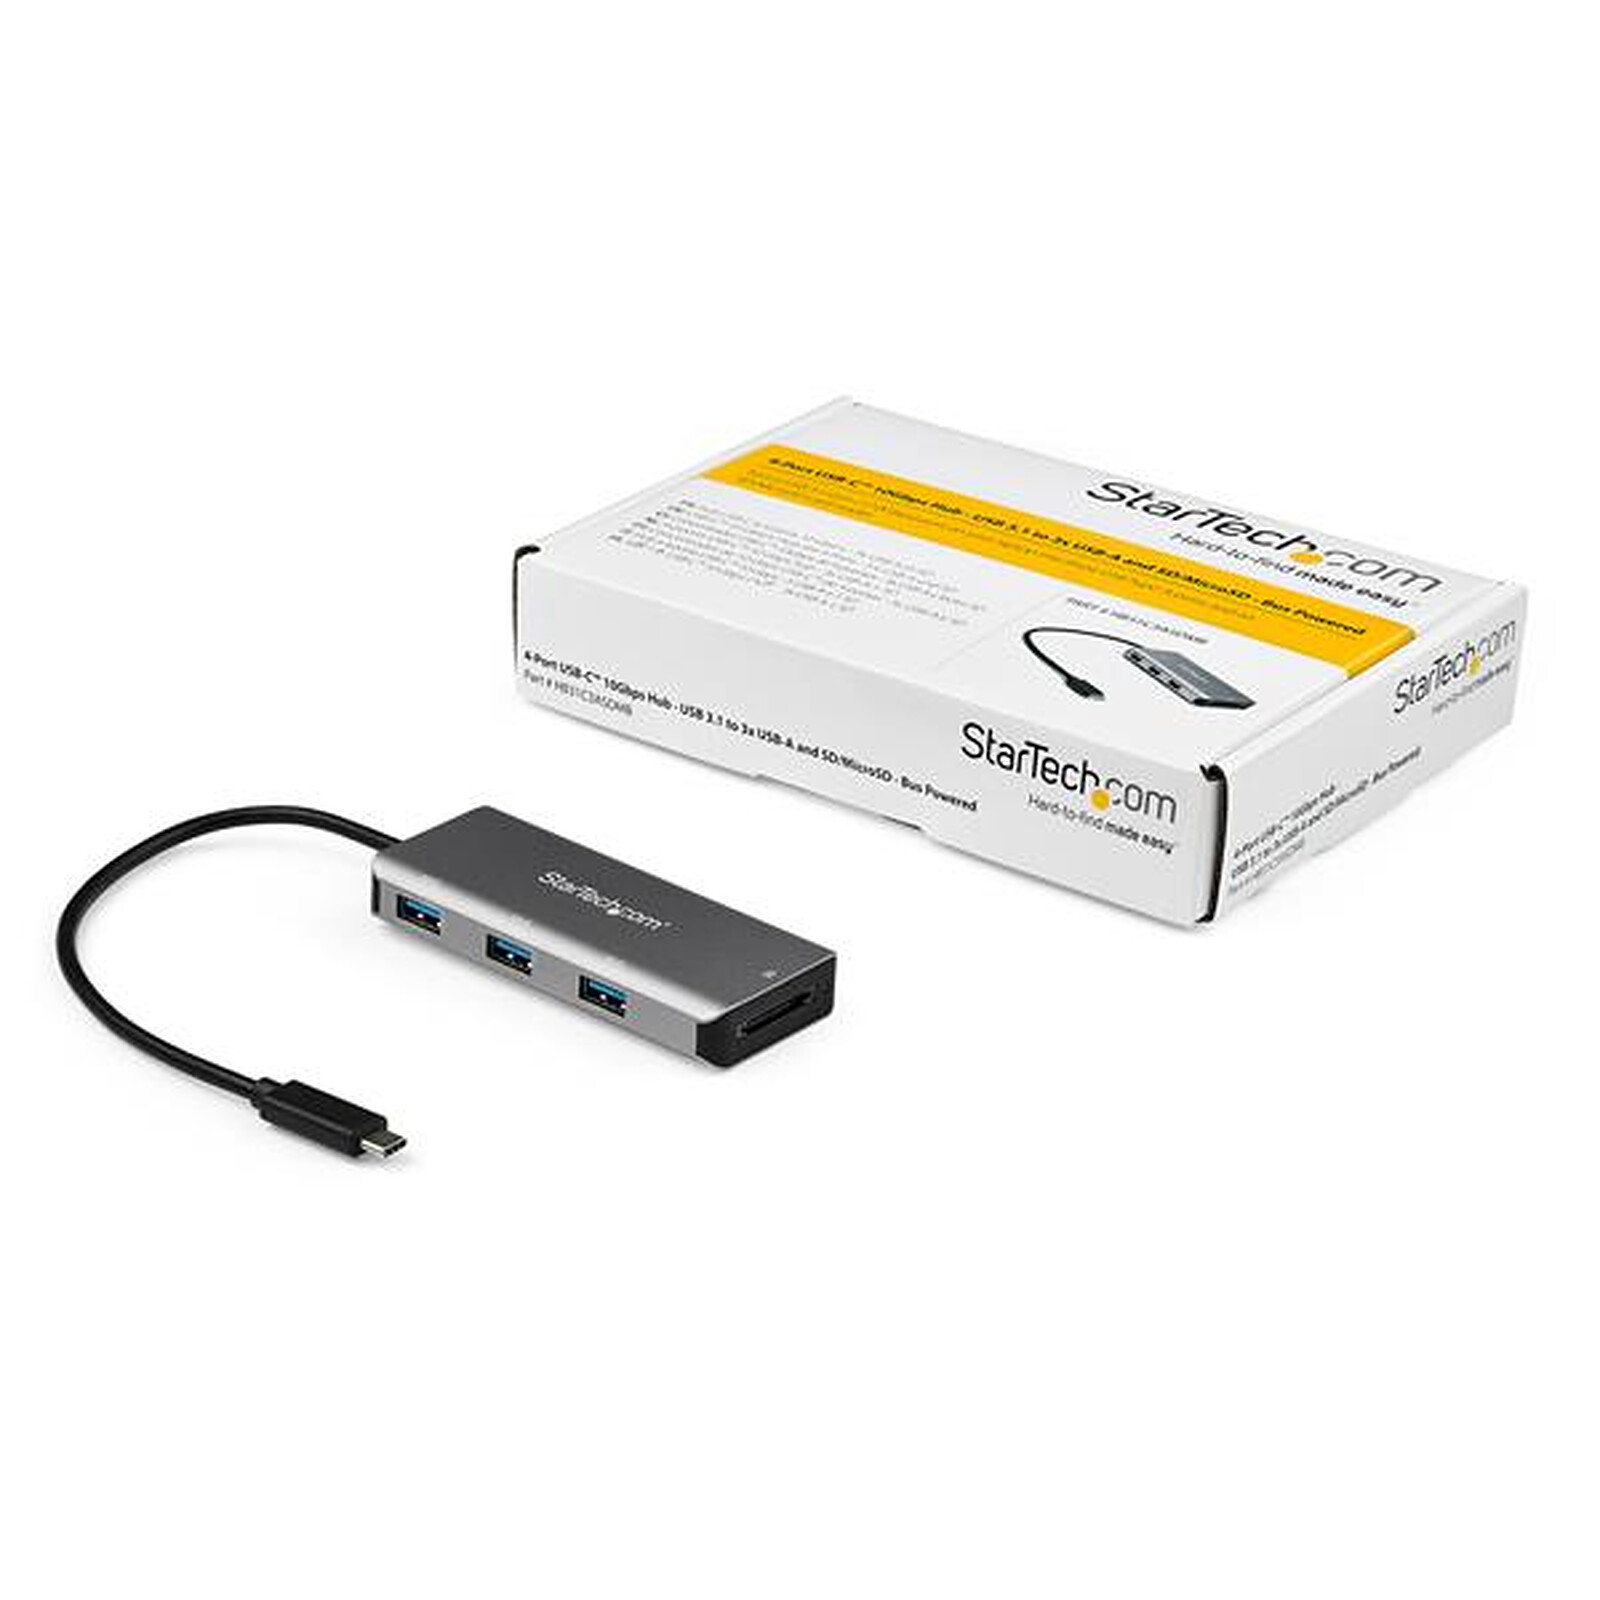 TARGUS Concentrateur USB-C 3 Ports USB 3.0 - Noir - Achat / Vente